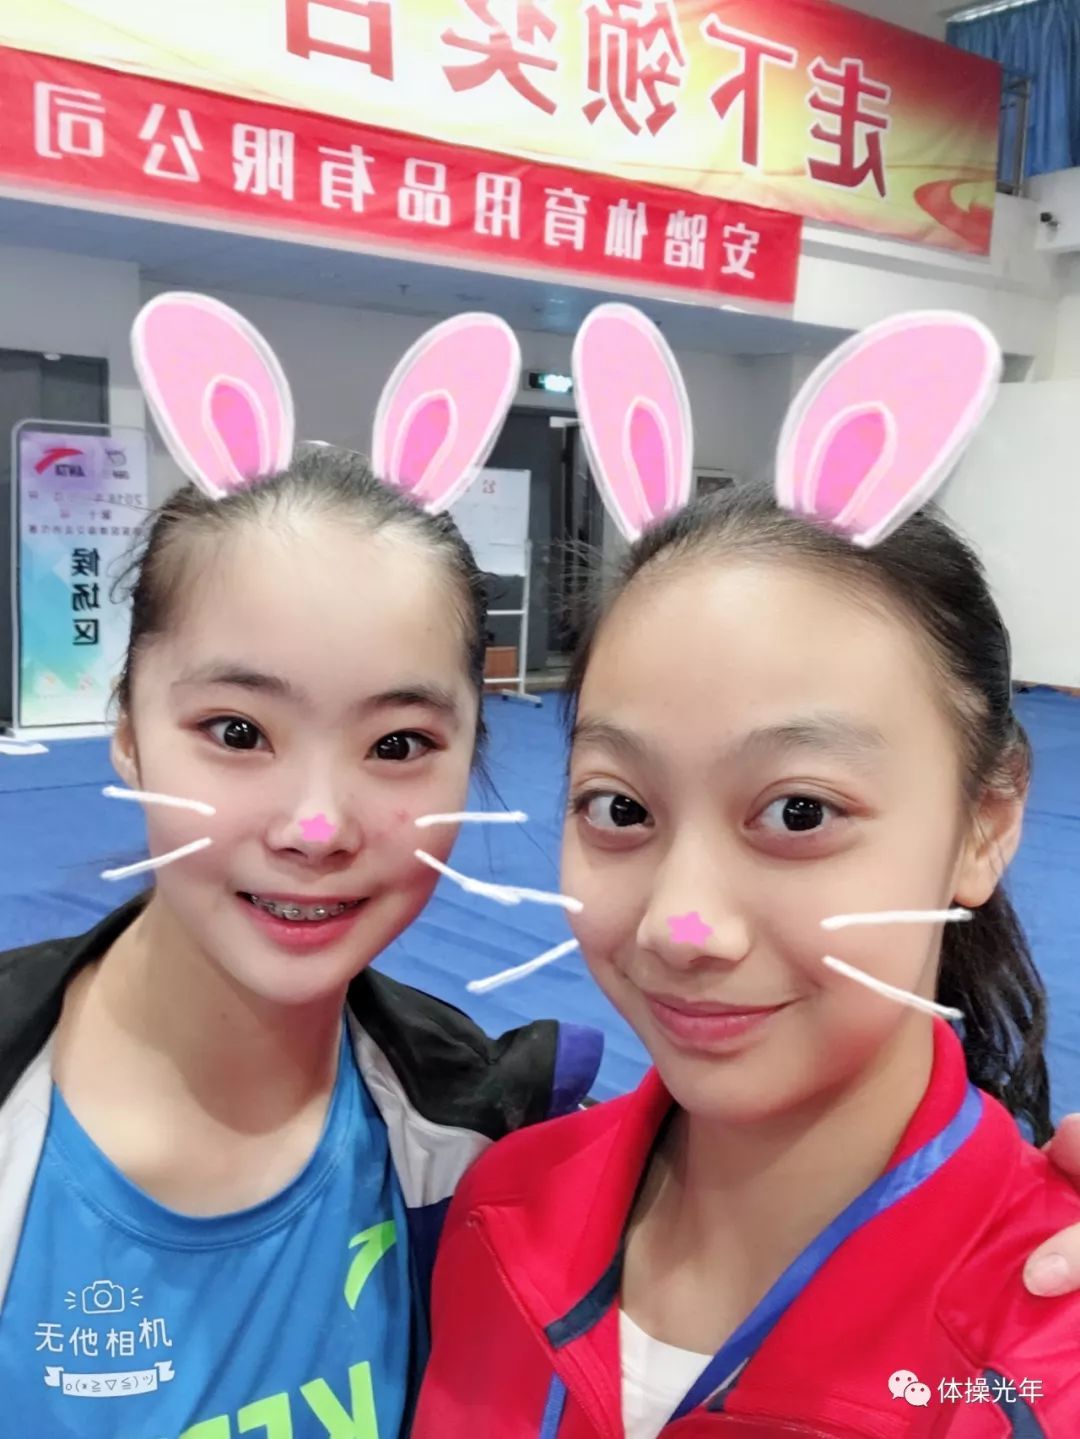 综合体育 体操-福建选手虞琳敏收获跳马冠军,成功卫冕.